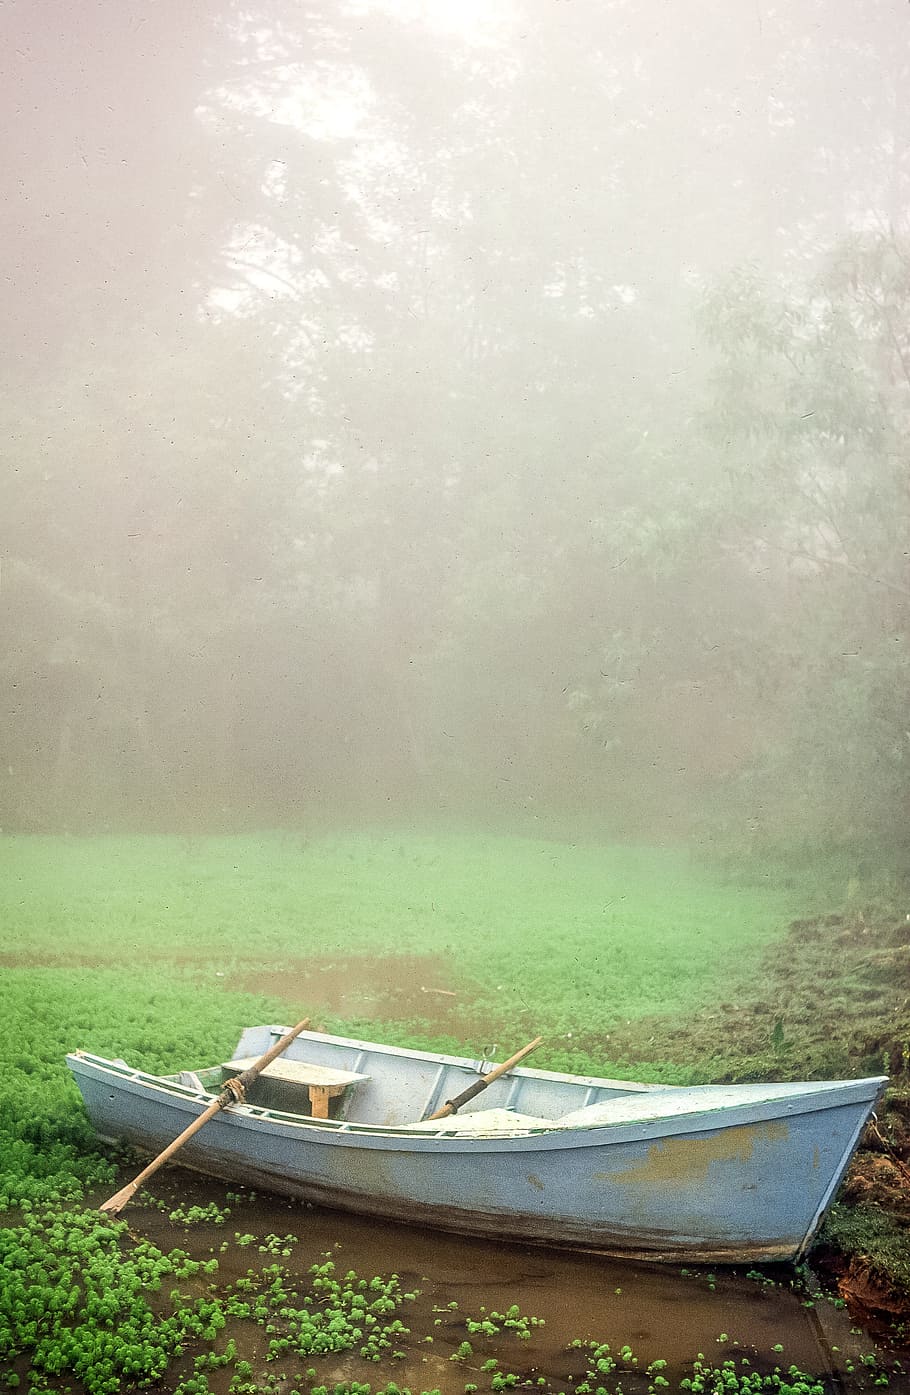 blanco, bote de remos, laguna, brumoso, mañana, aventura, canoa, niebla, jardín, parque